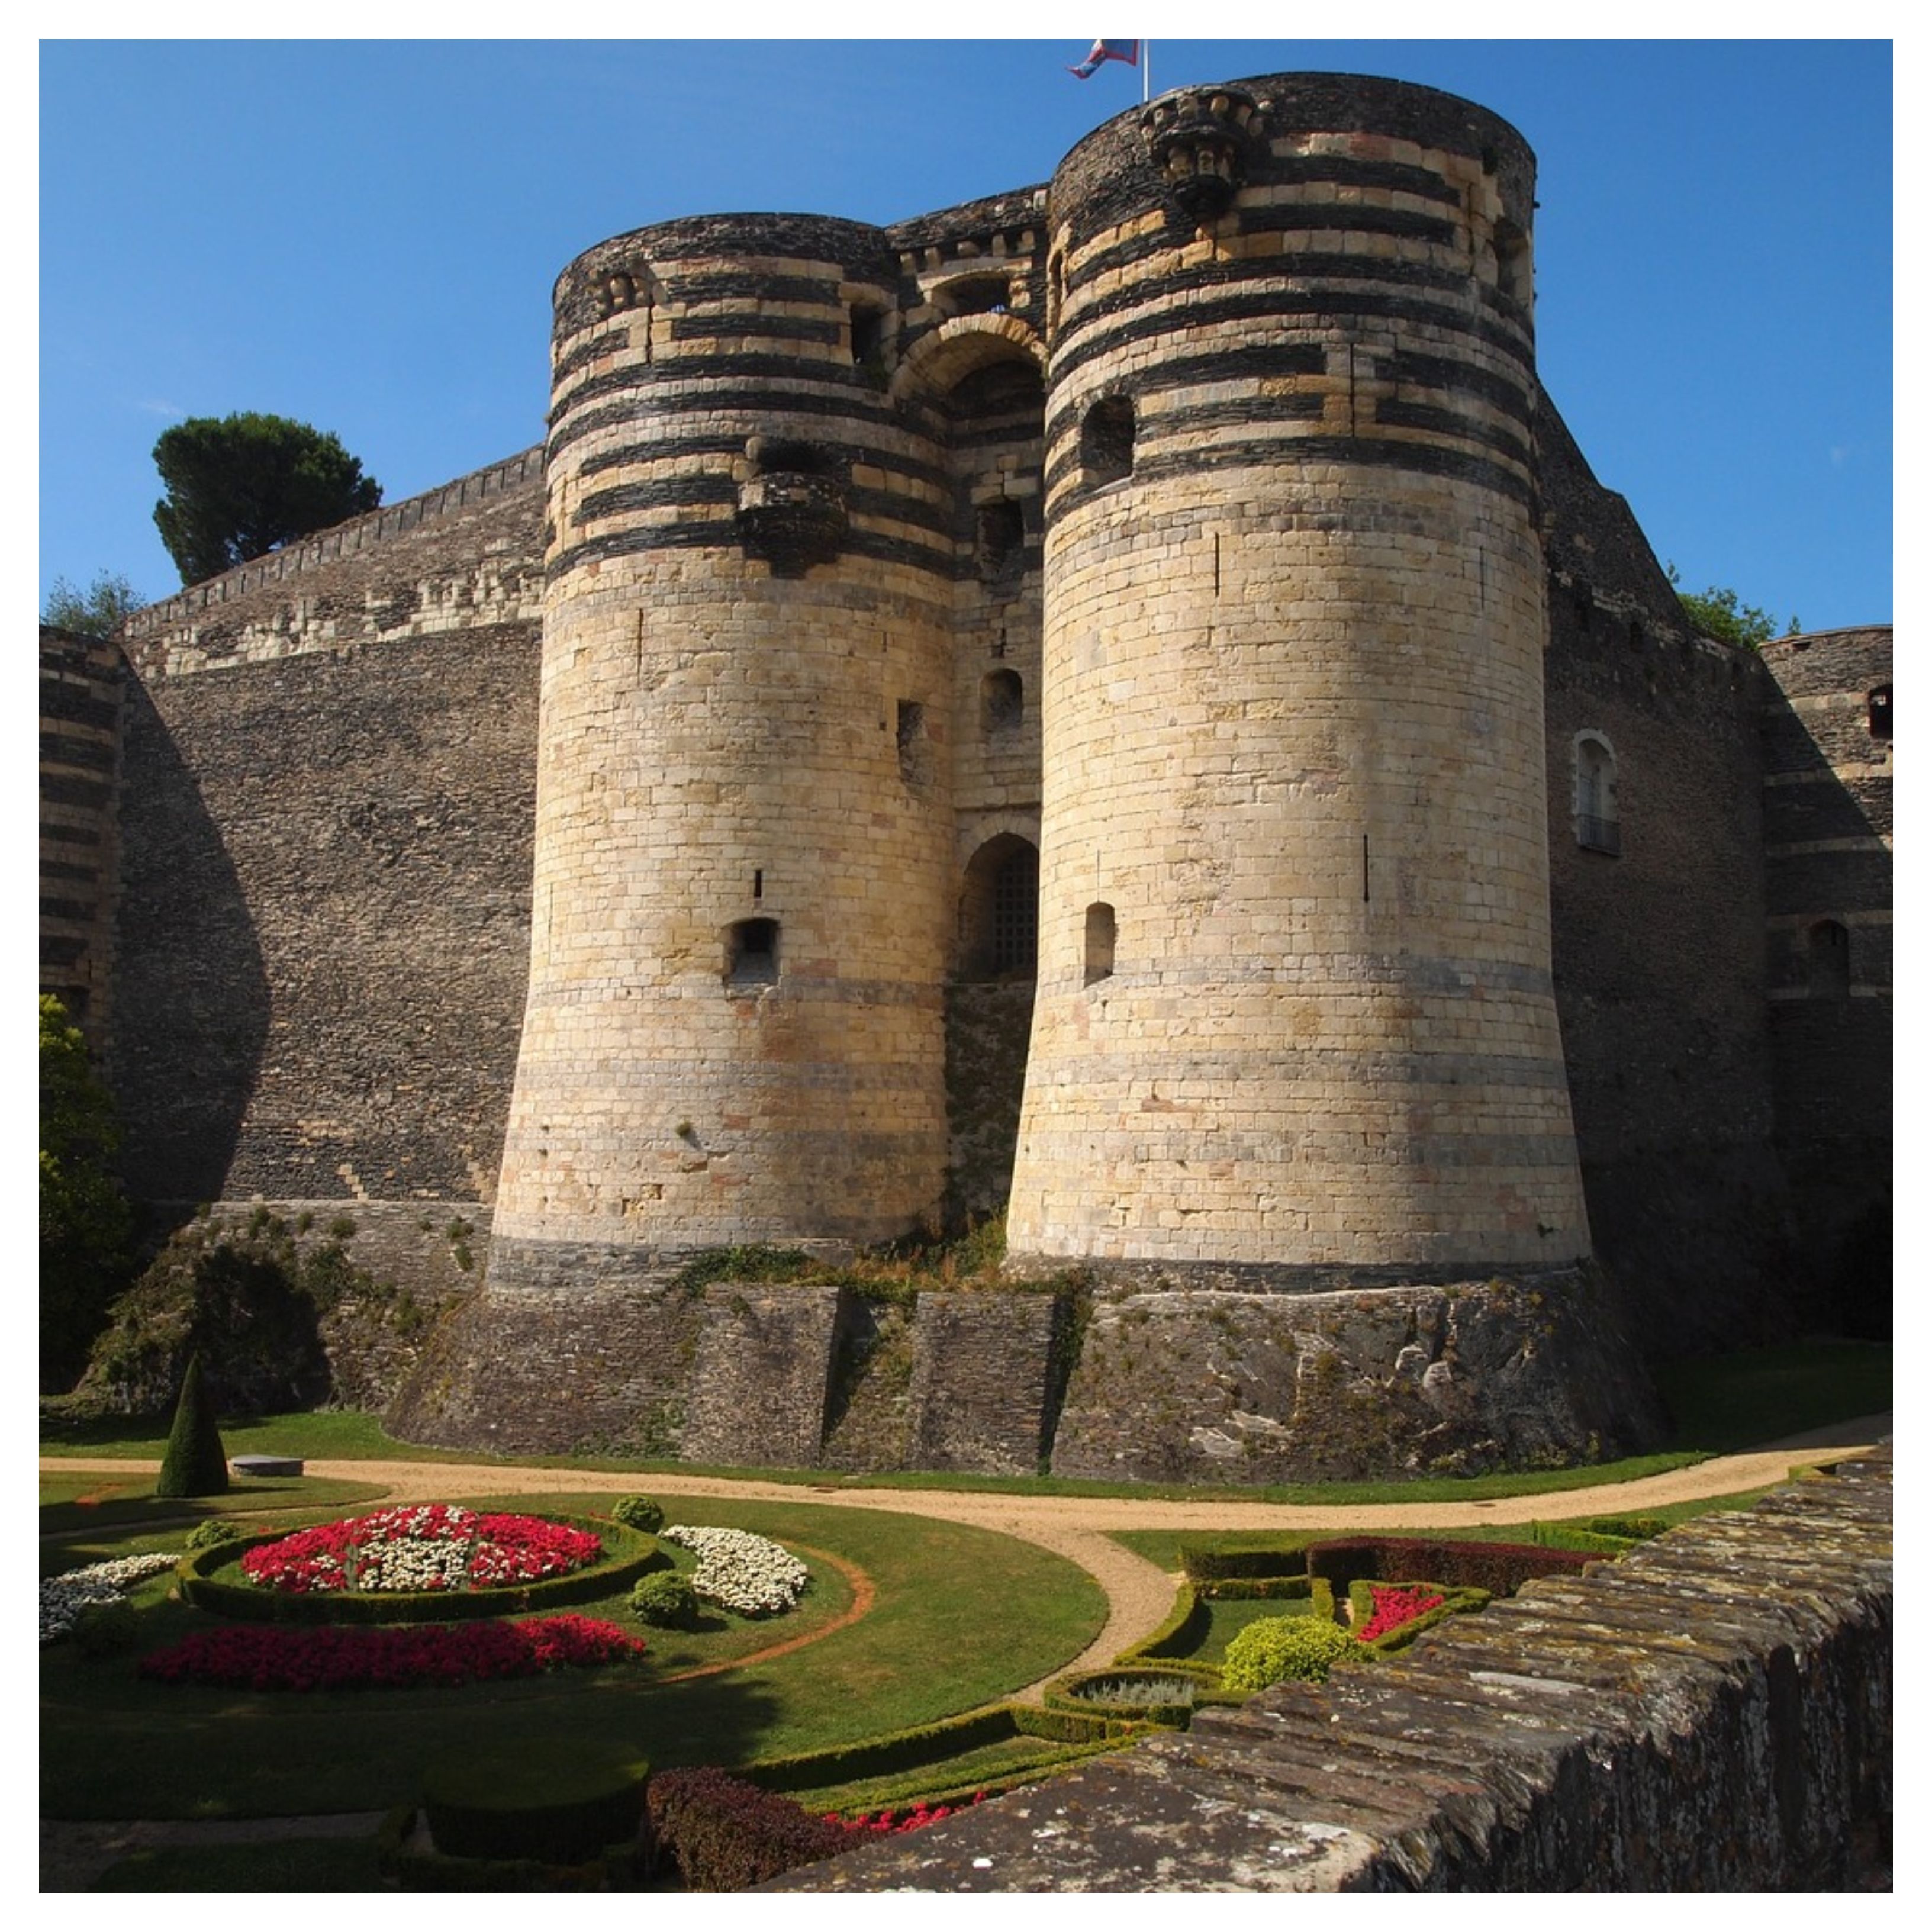 Aperçu des deux tours du château d'Angers